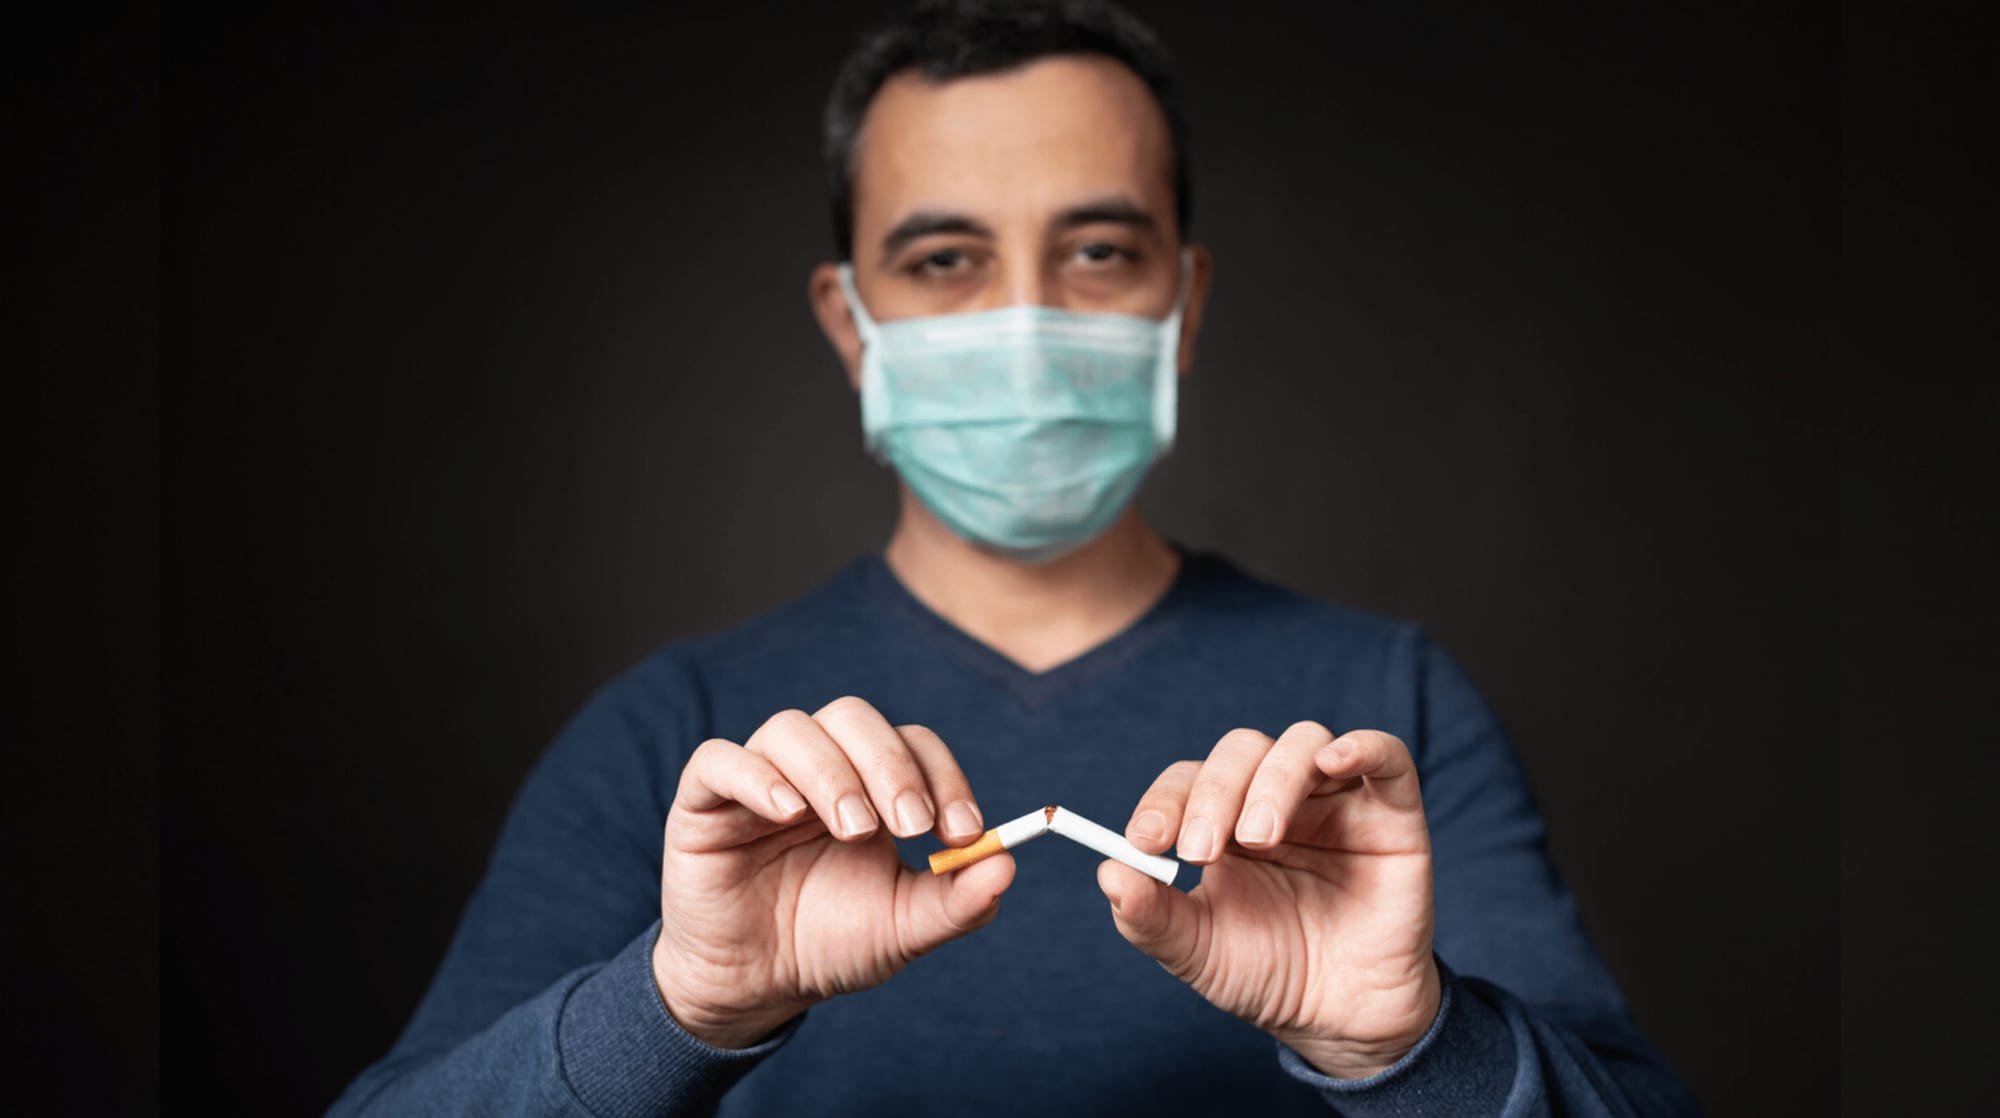 باحثون يكتشفون تهديدا خطيرا للتدخين مرتبطا بـ"كوفيد-19"